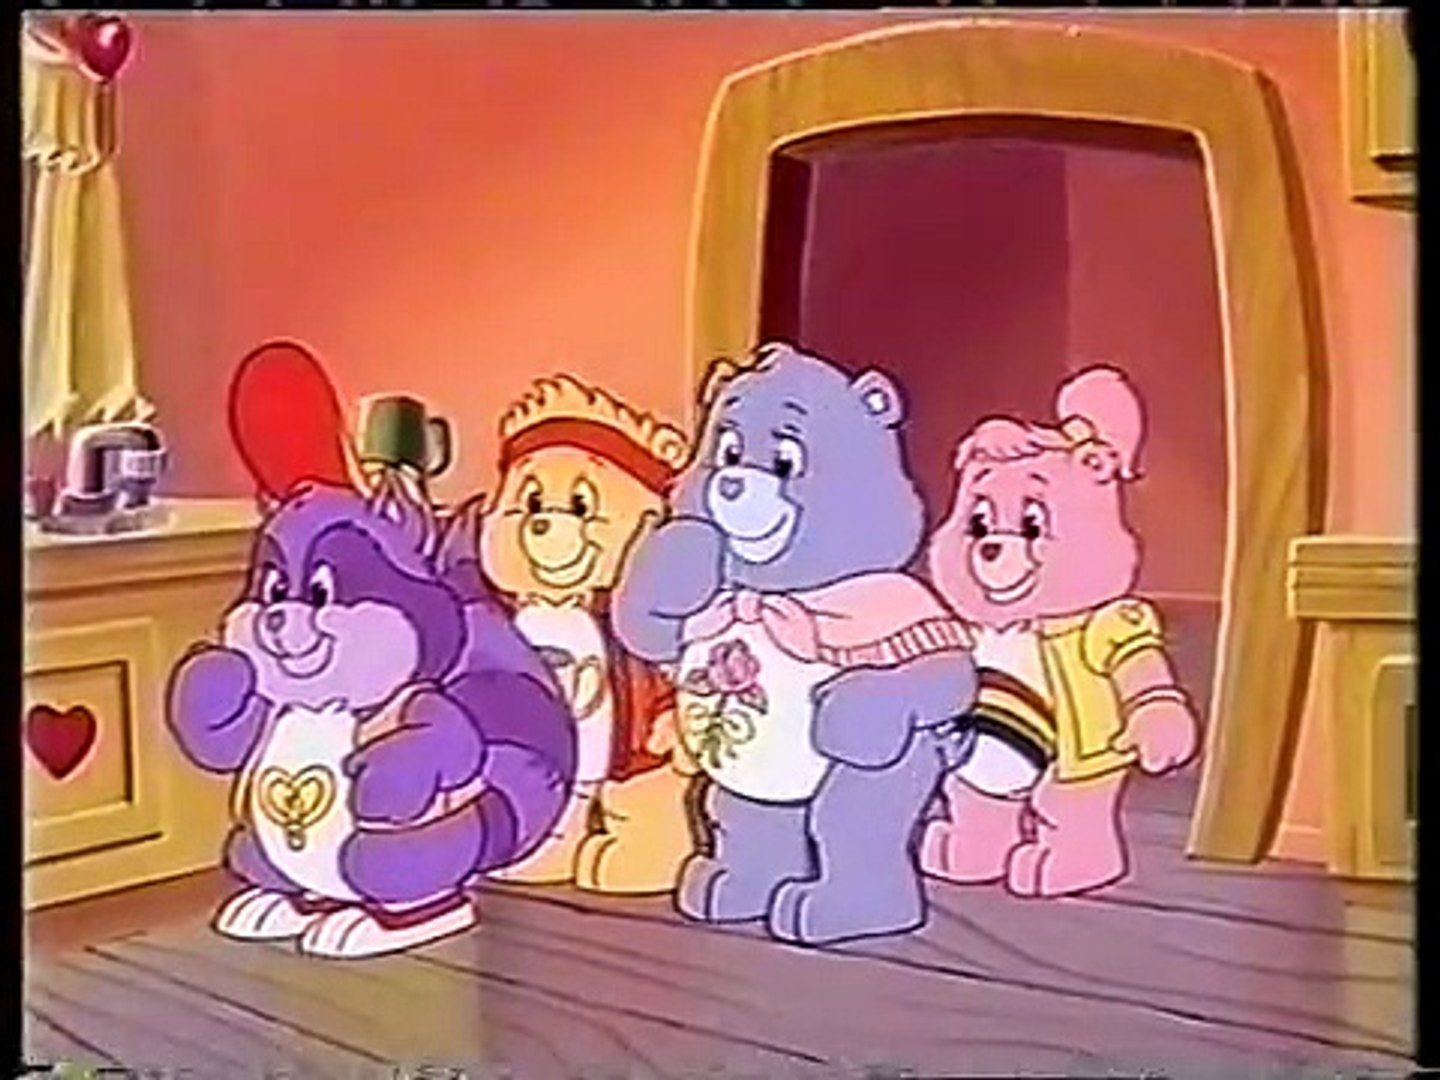 Care Bears - Care Bear Carneys [VHS] (1989)